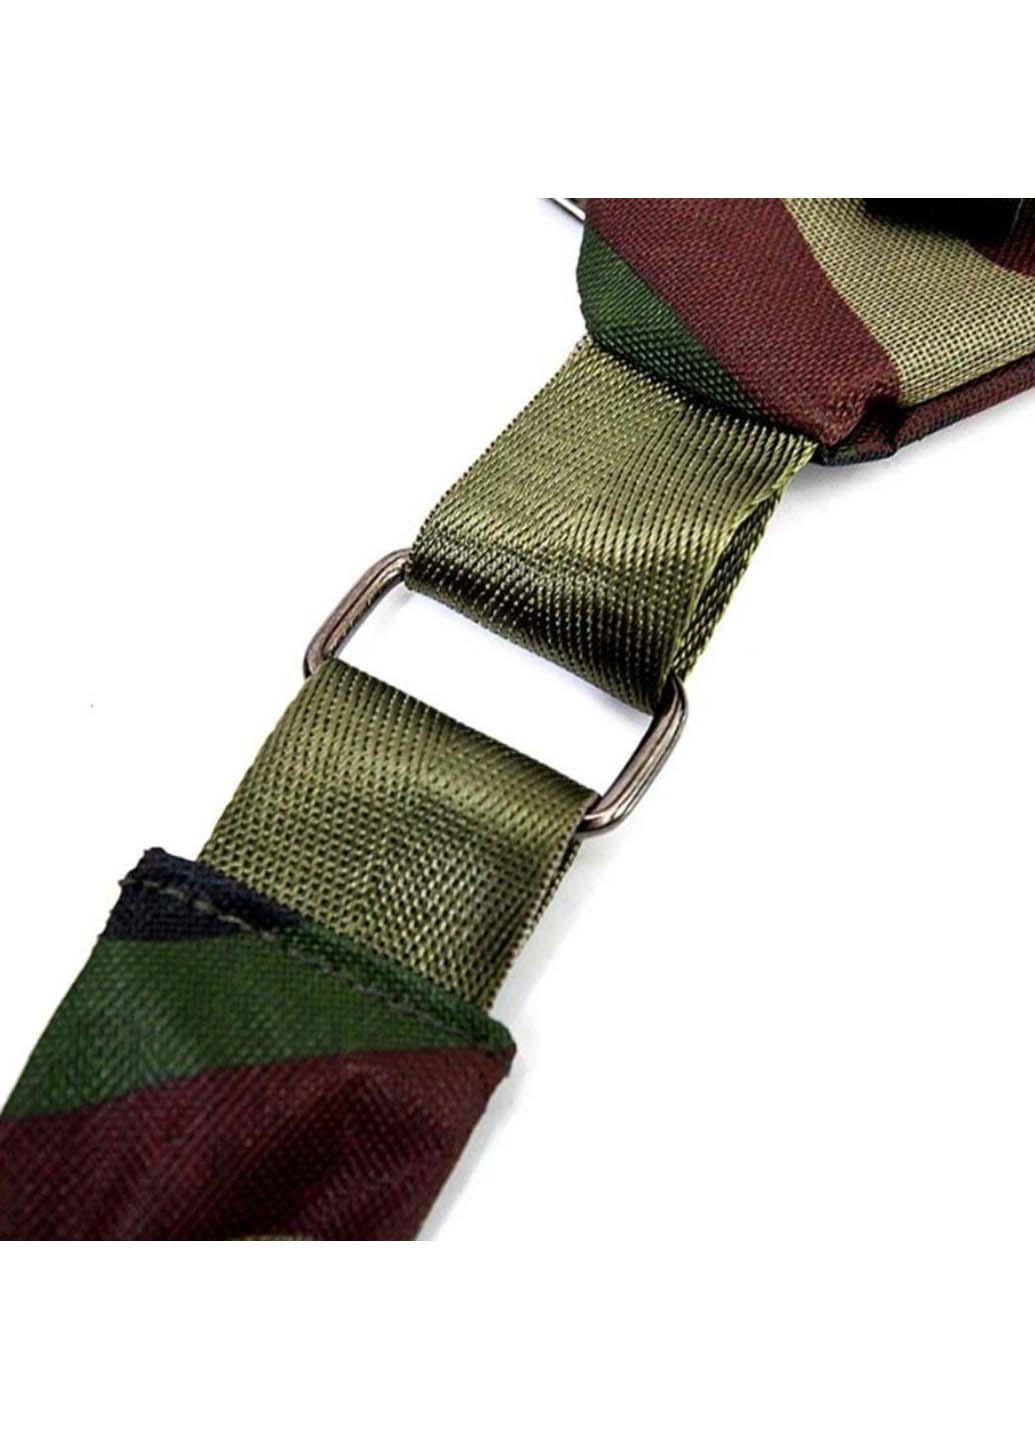 Функциональная сумка через плечо Military Cross body (271537721)